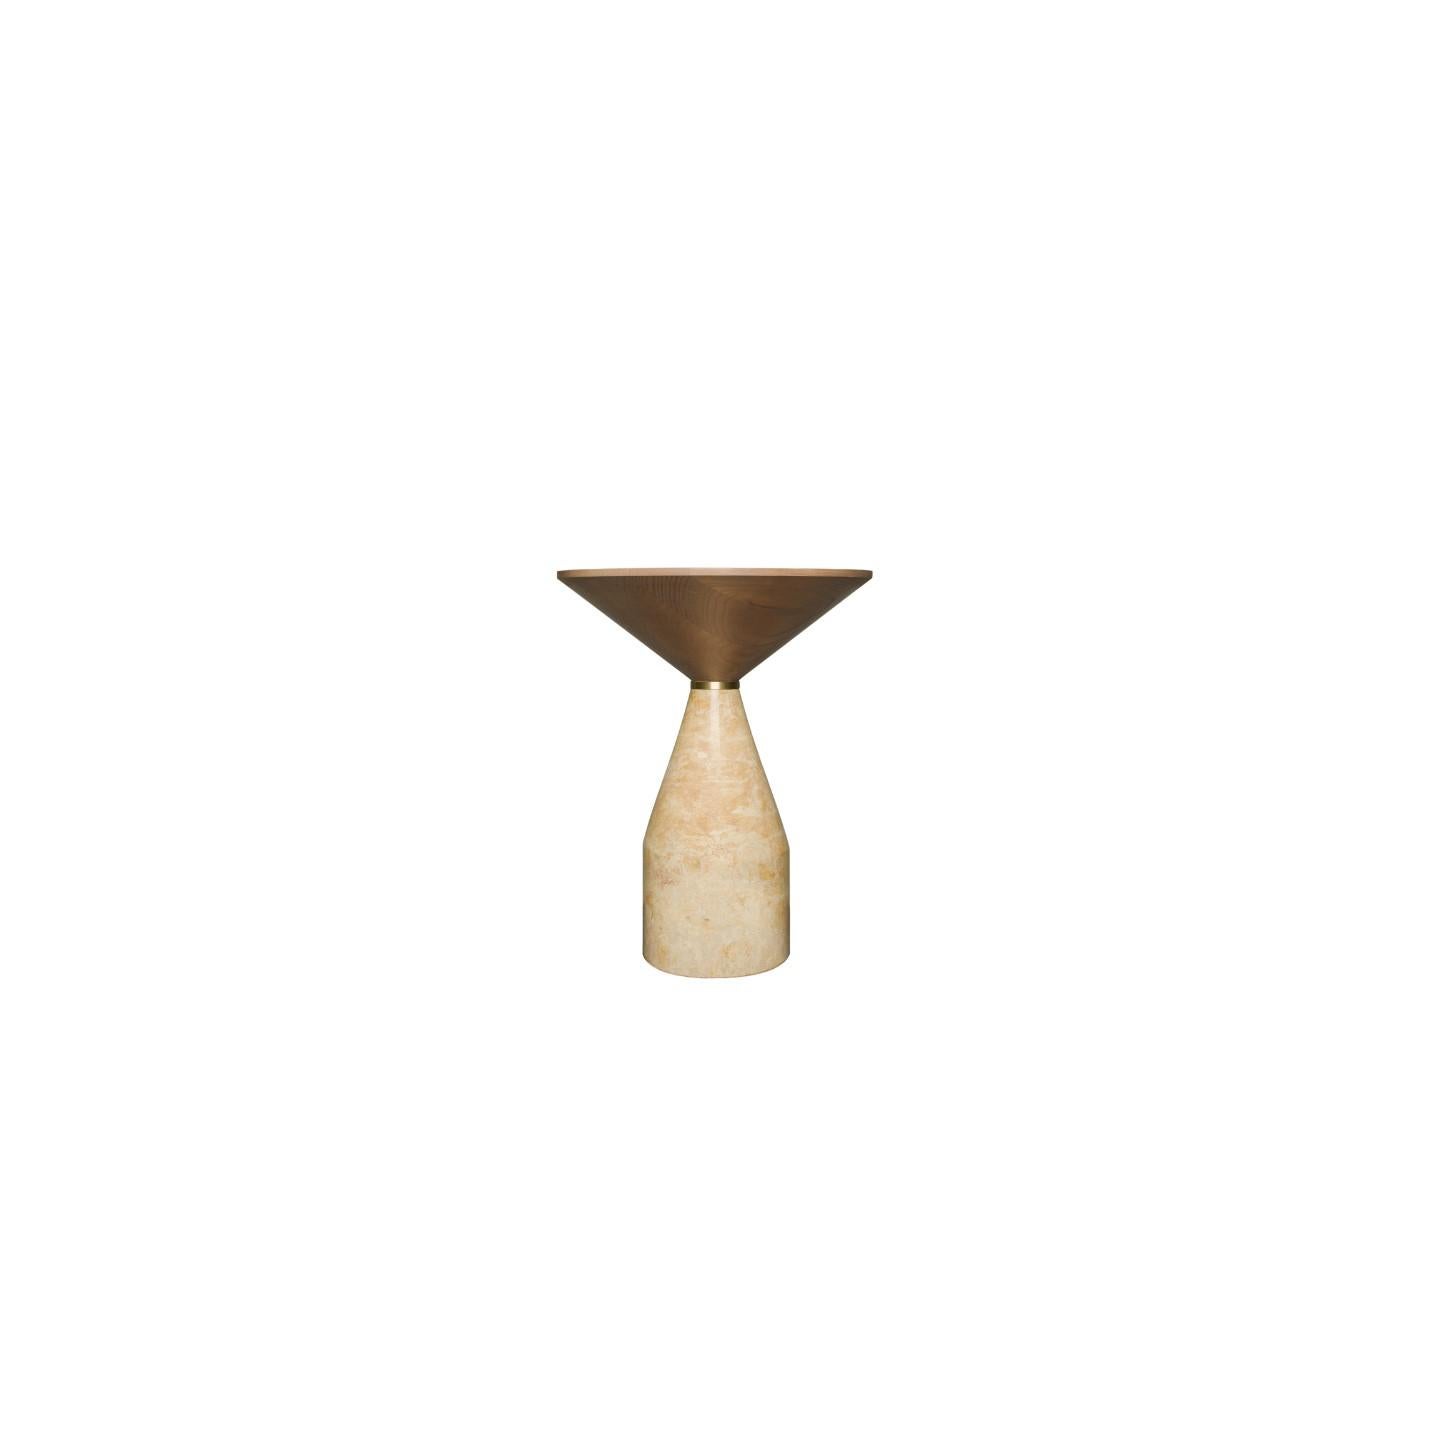 Cino est une nouvelle table conçue par le designer italo-canadien Libero Rutilo pour Morelato.
en marbre massif tourné avec plateau en frêne massif tourné à la main, disponible en différentes finitions de bois et différents marbres.
Dimension D 37 H